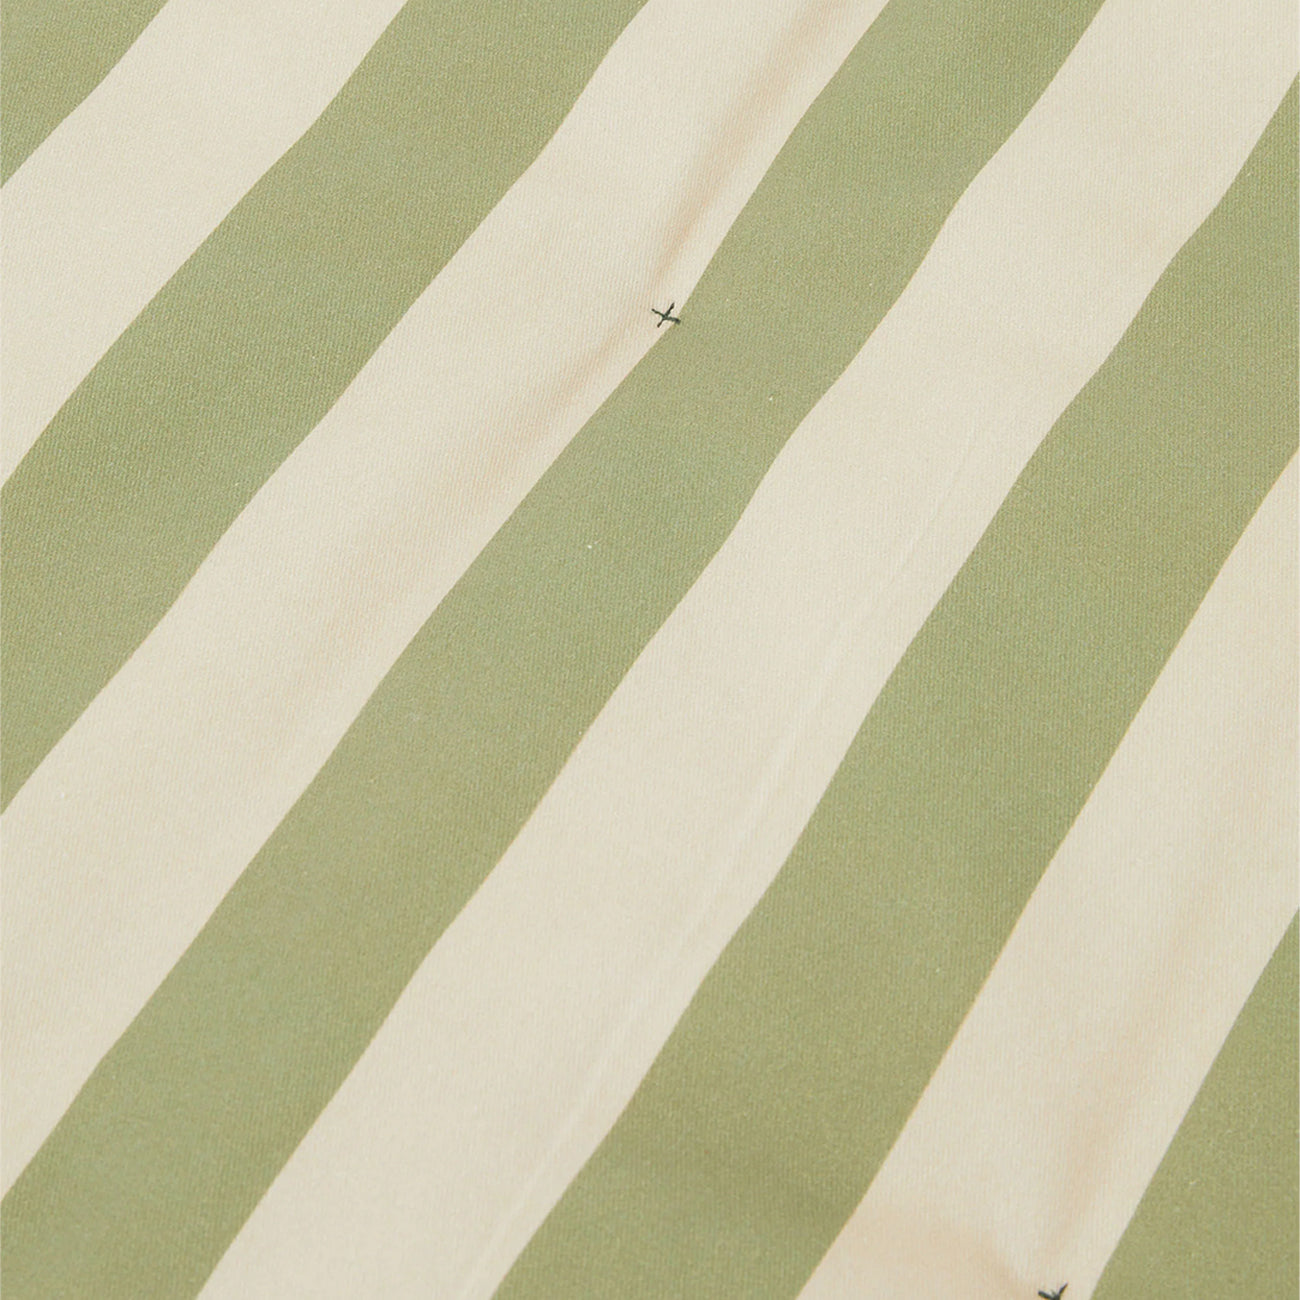 Striped Play Mat - Green